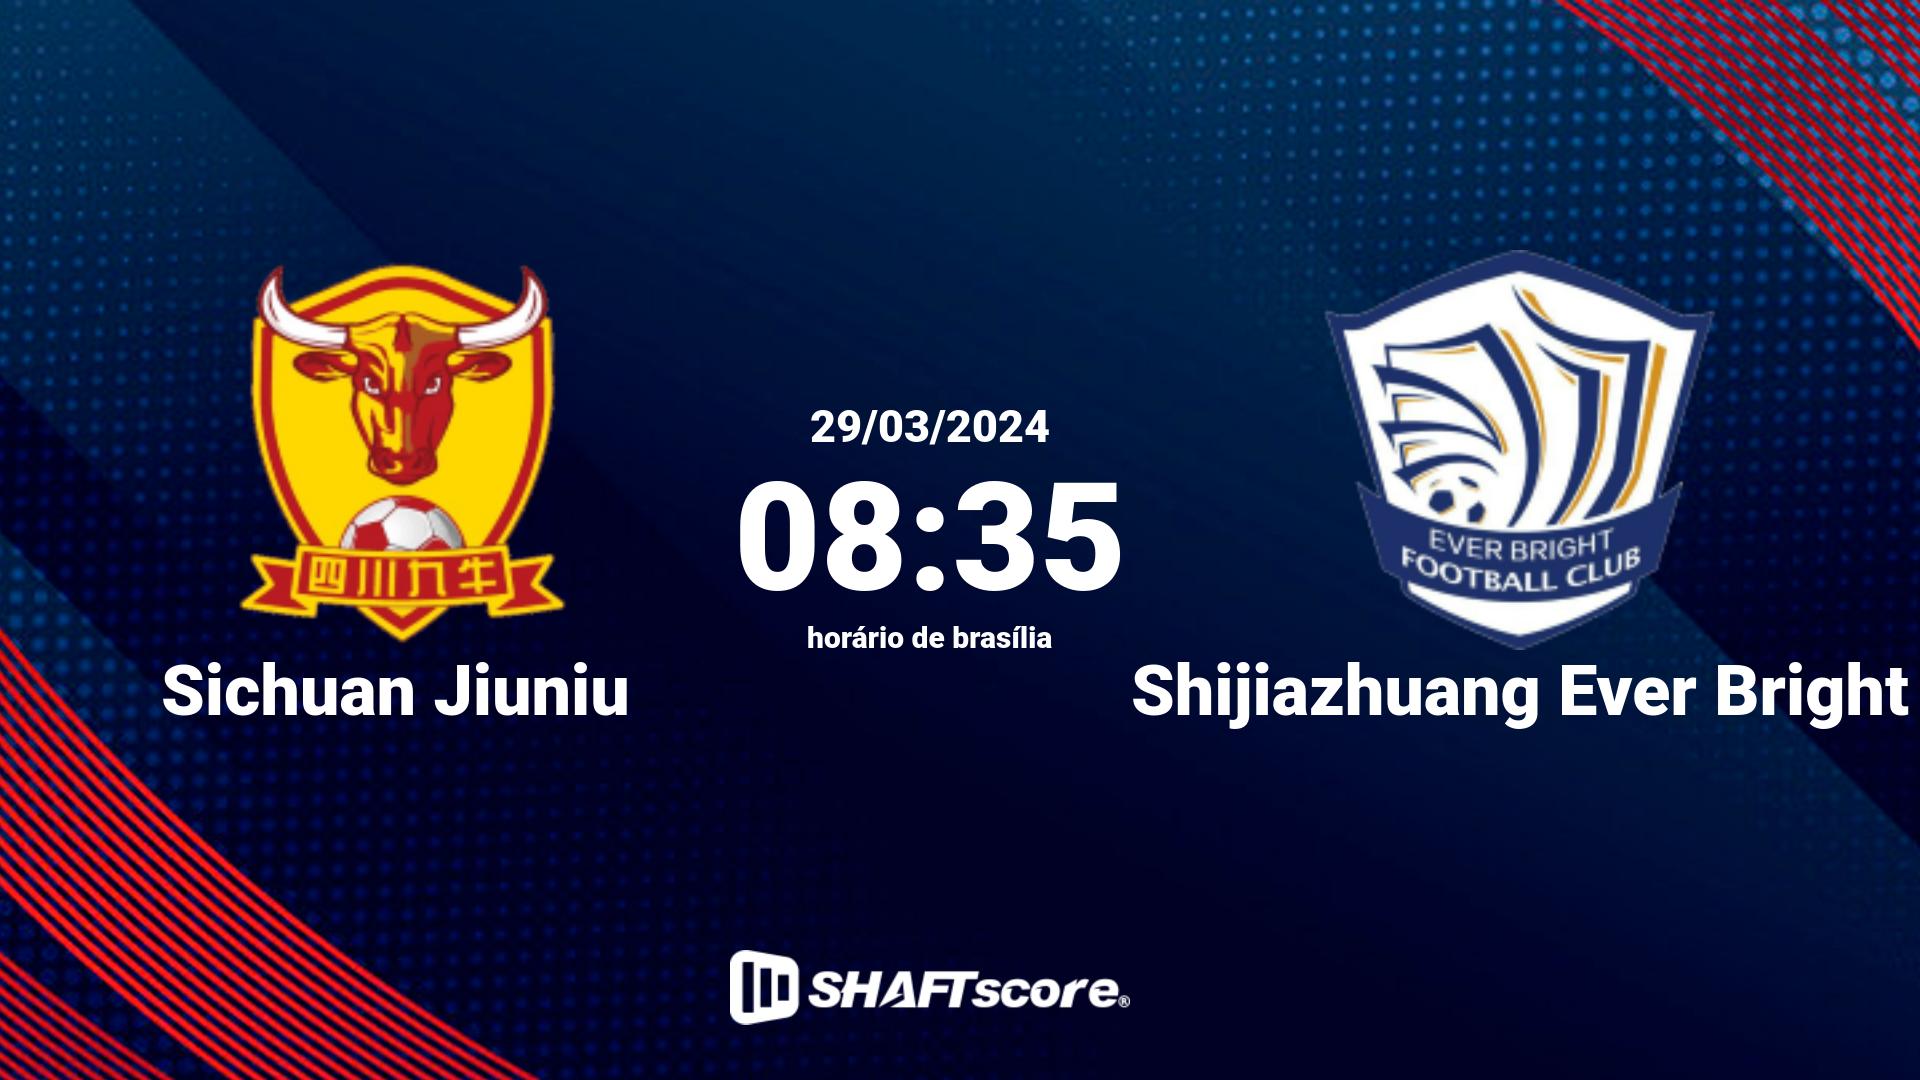 Estatísticas do jogo Sichuan Jiuniu vs Shijiazhuang Ever Bright 29.03 08:35